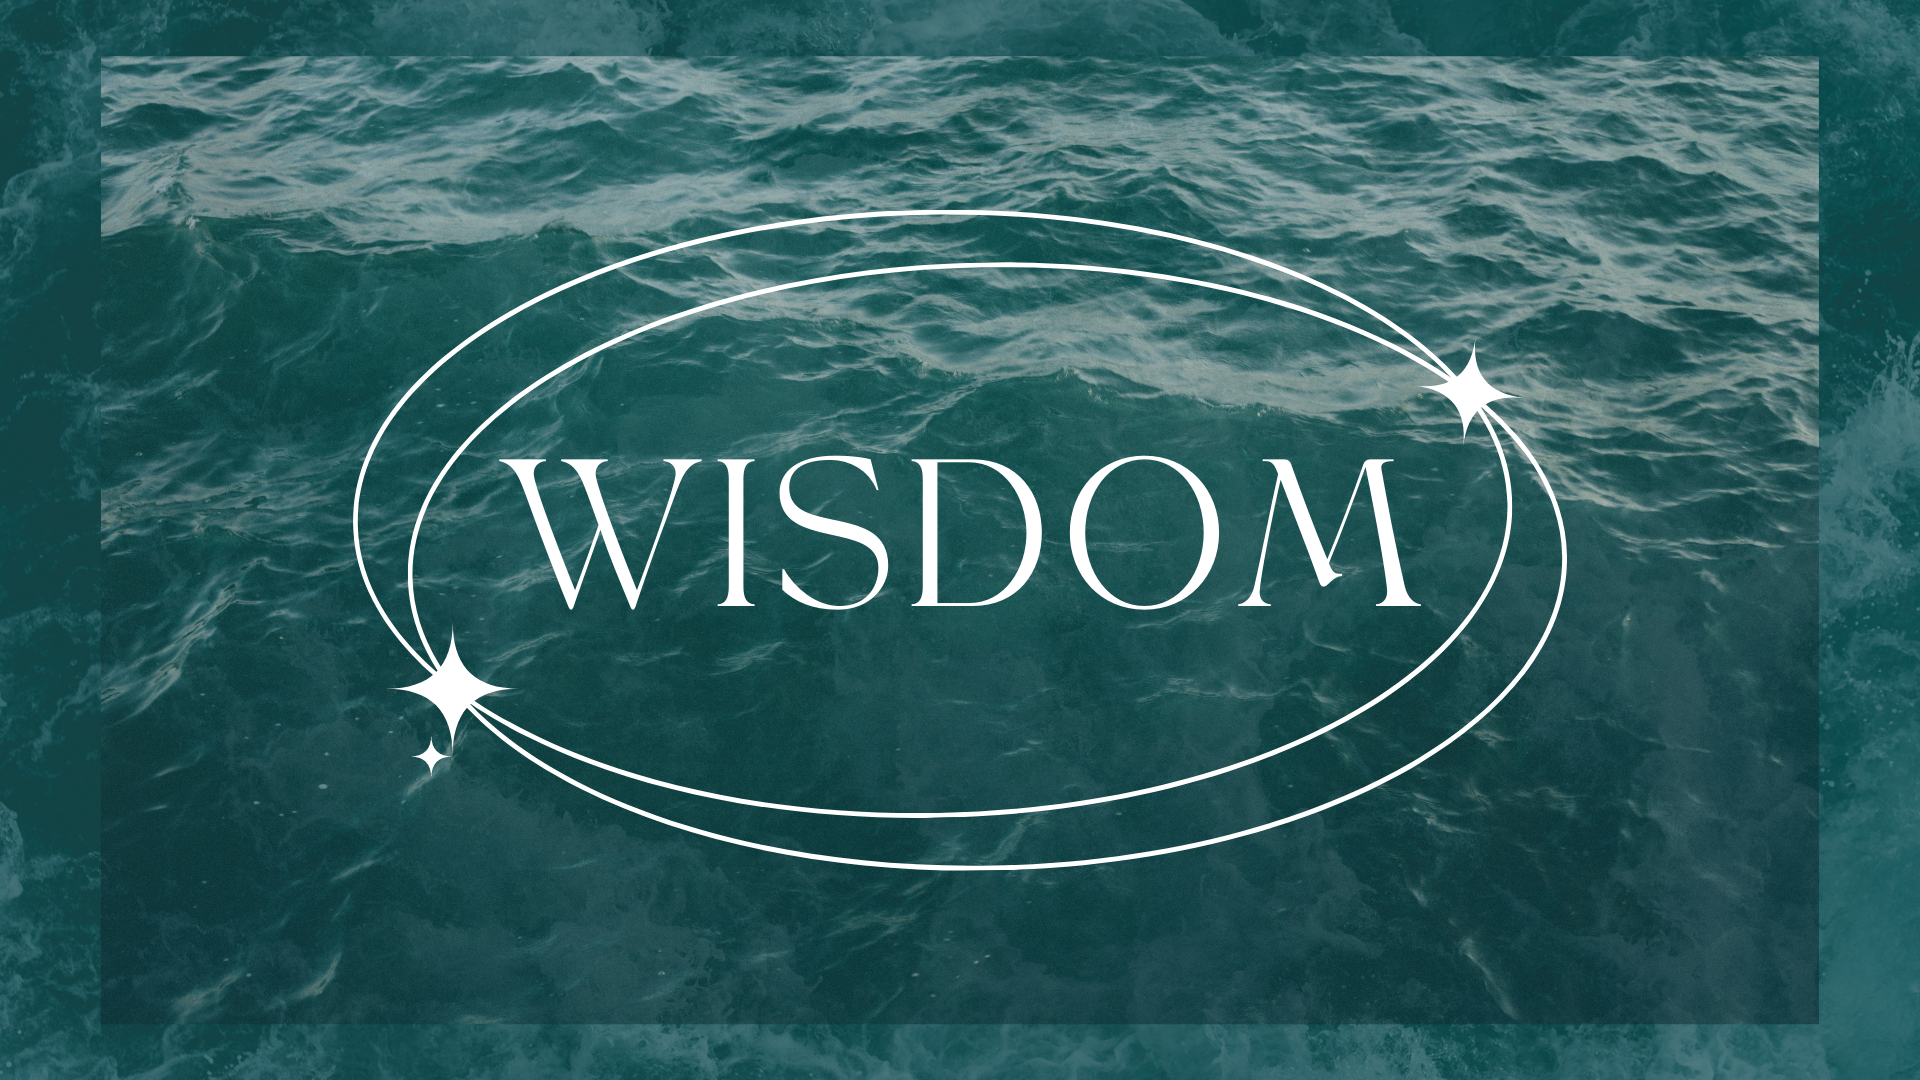 Wisdom banner